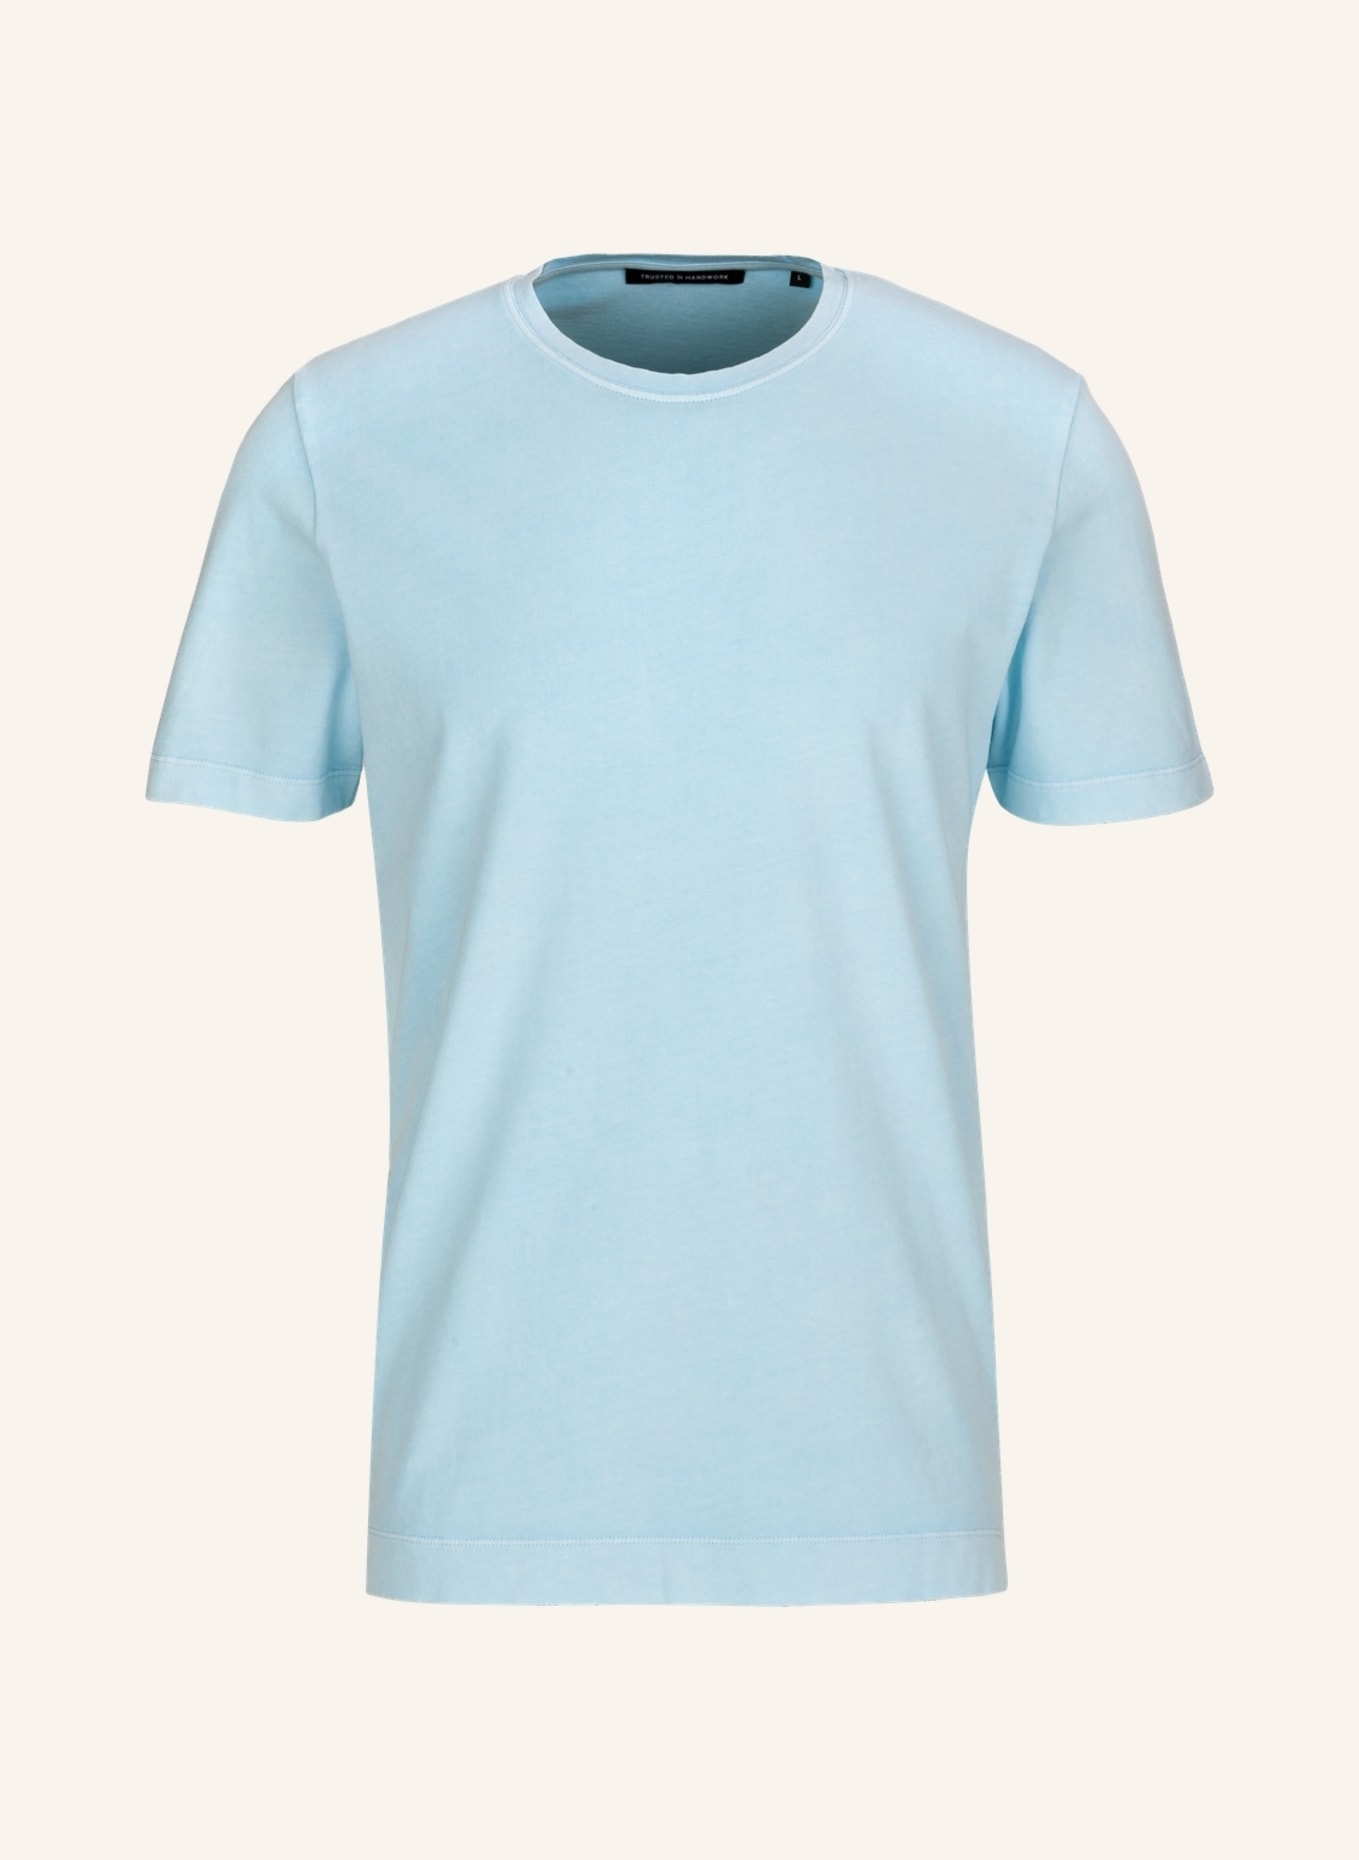 Футболка TRUSTED HANDWORK SYDNEY, светло-синий футболка trusted handwork fitted светло серый